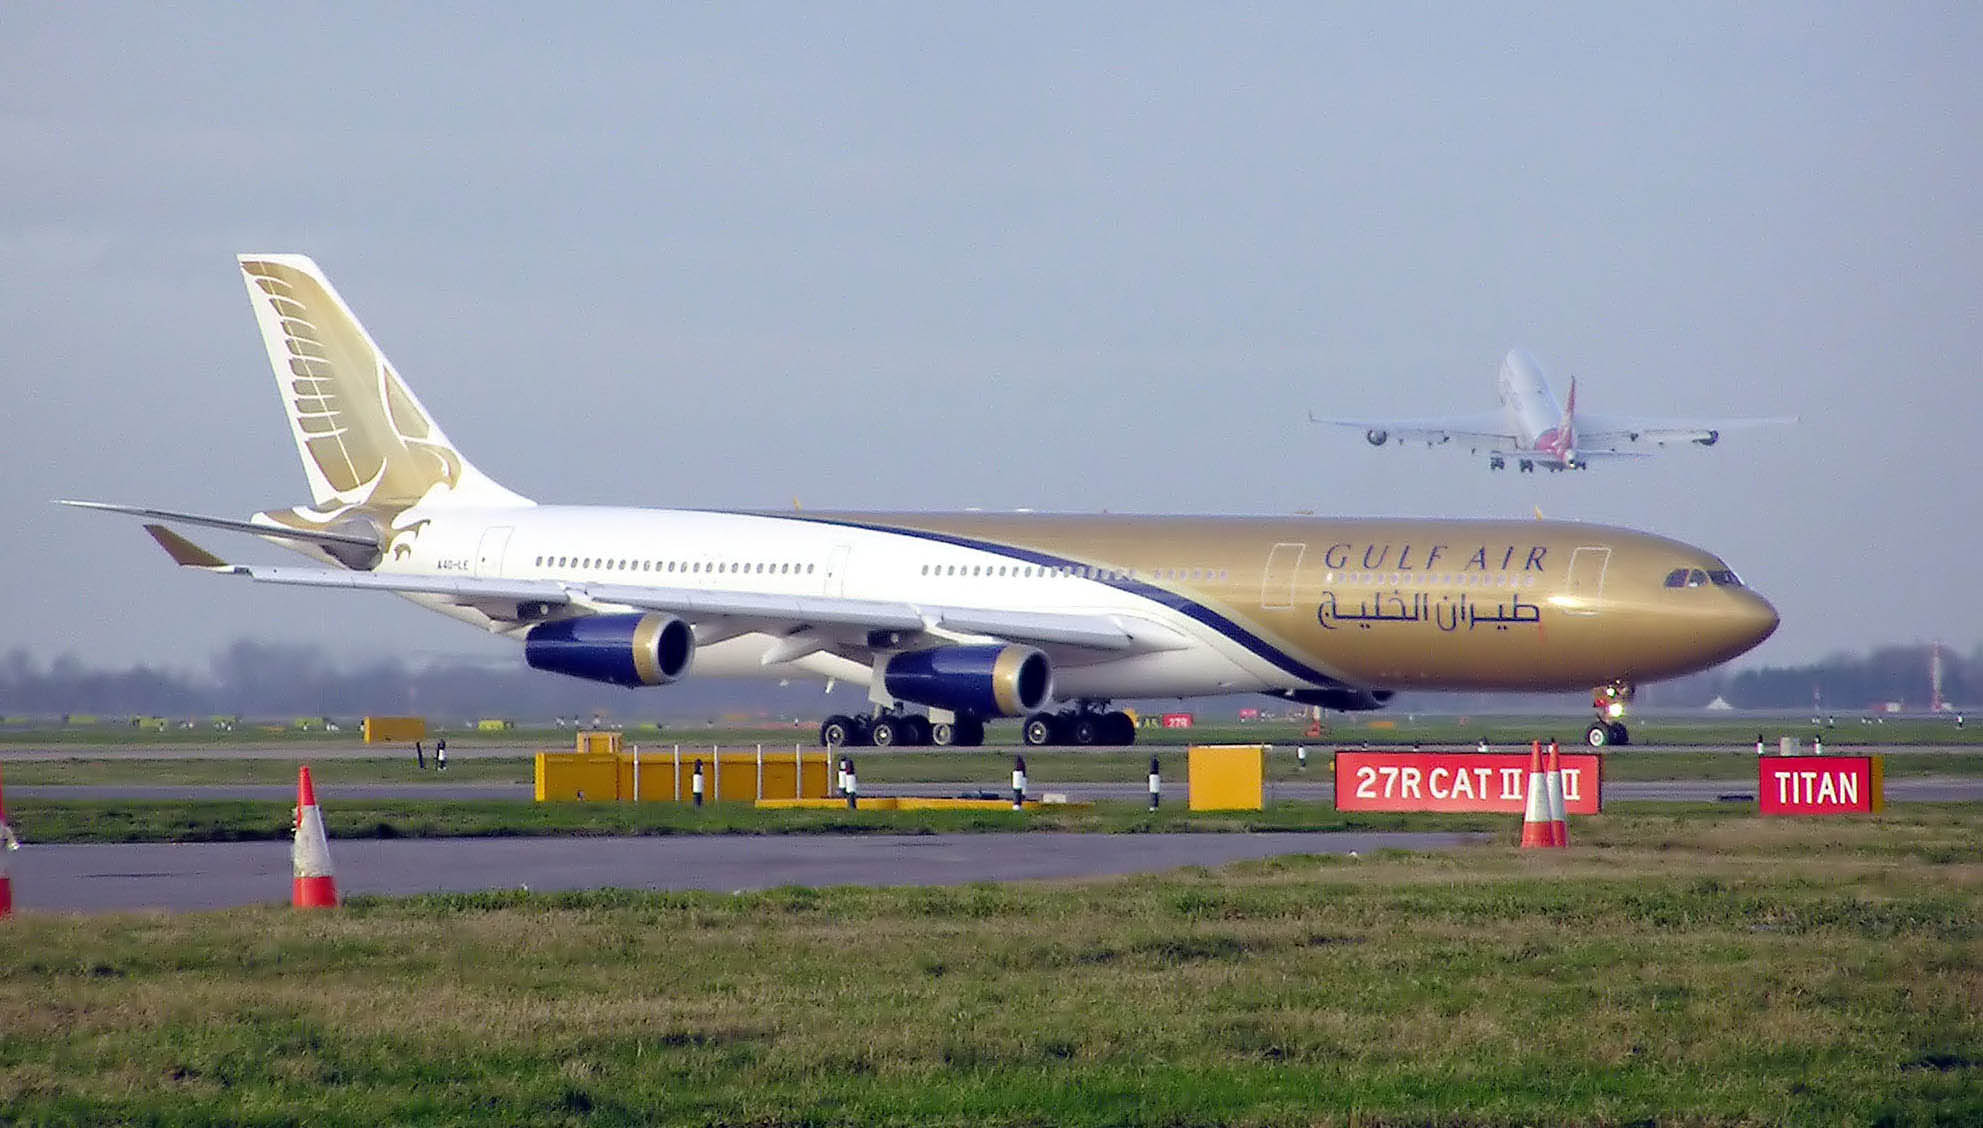 Airbus A340-200/300 previous